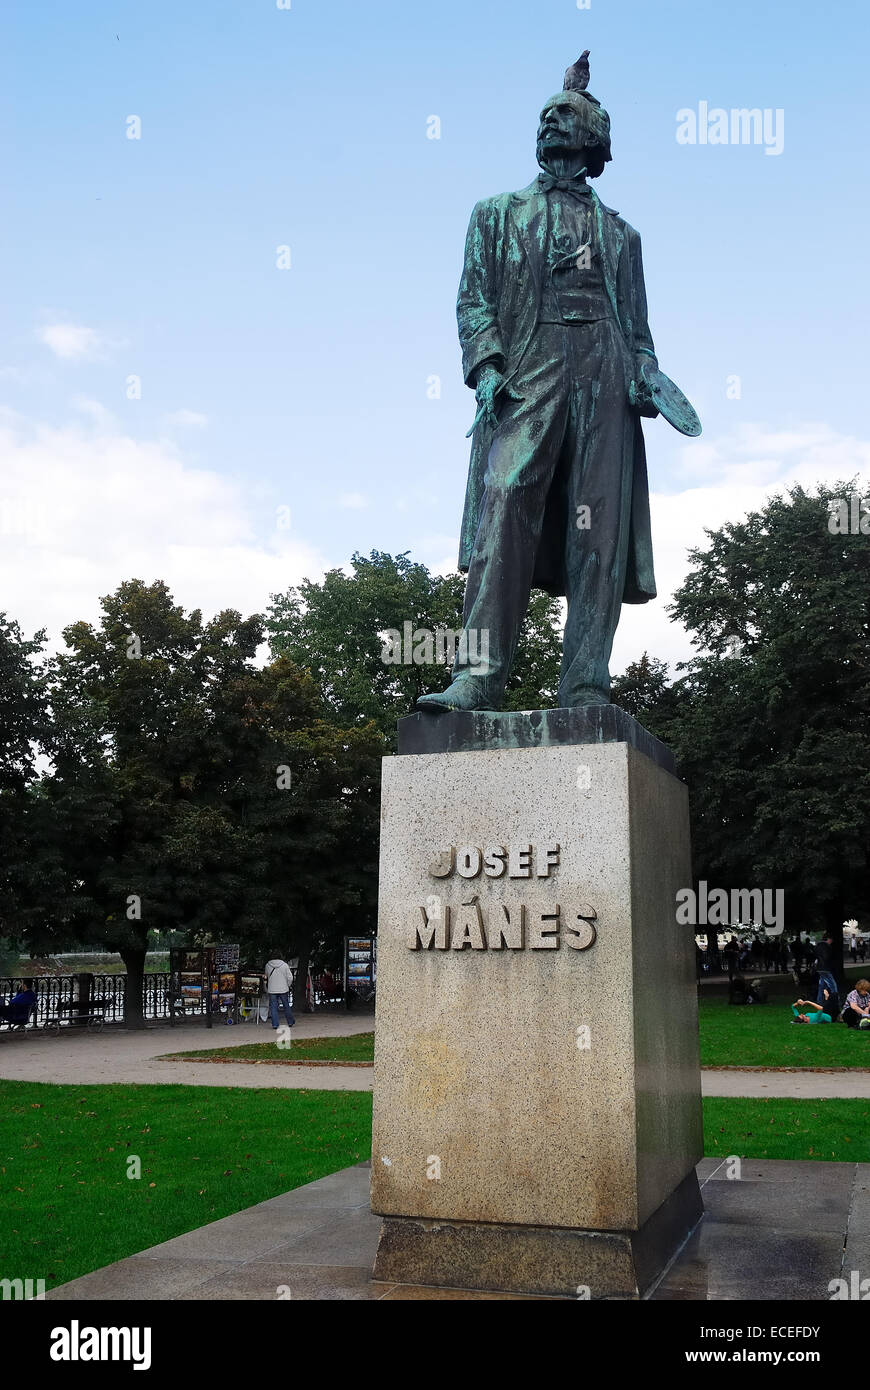 République tchèque. Prague. L'branze statue de Josef Mánes. Josef Mánes(12 mai 1820, Prague - 9 décembre 1871, Prague) est un peintre tchèque. Banque D'Images